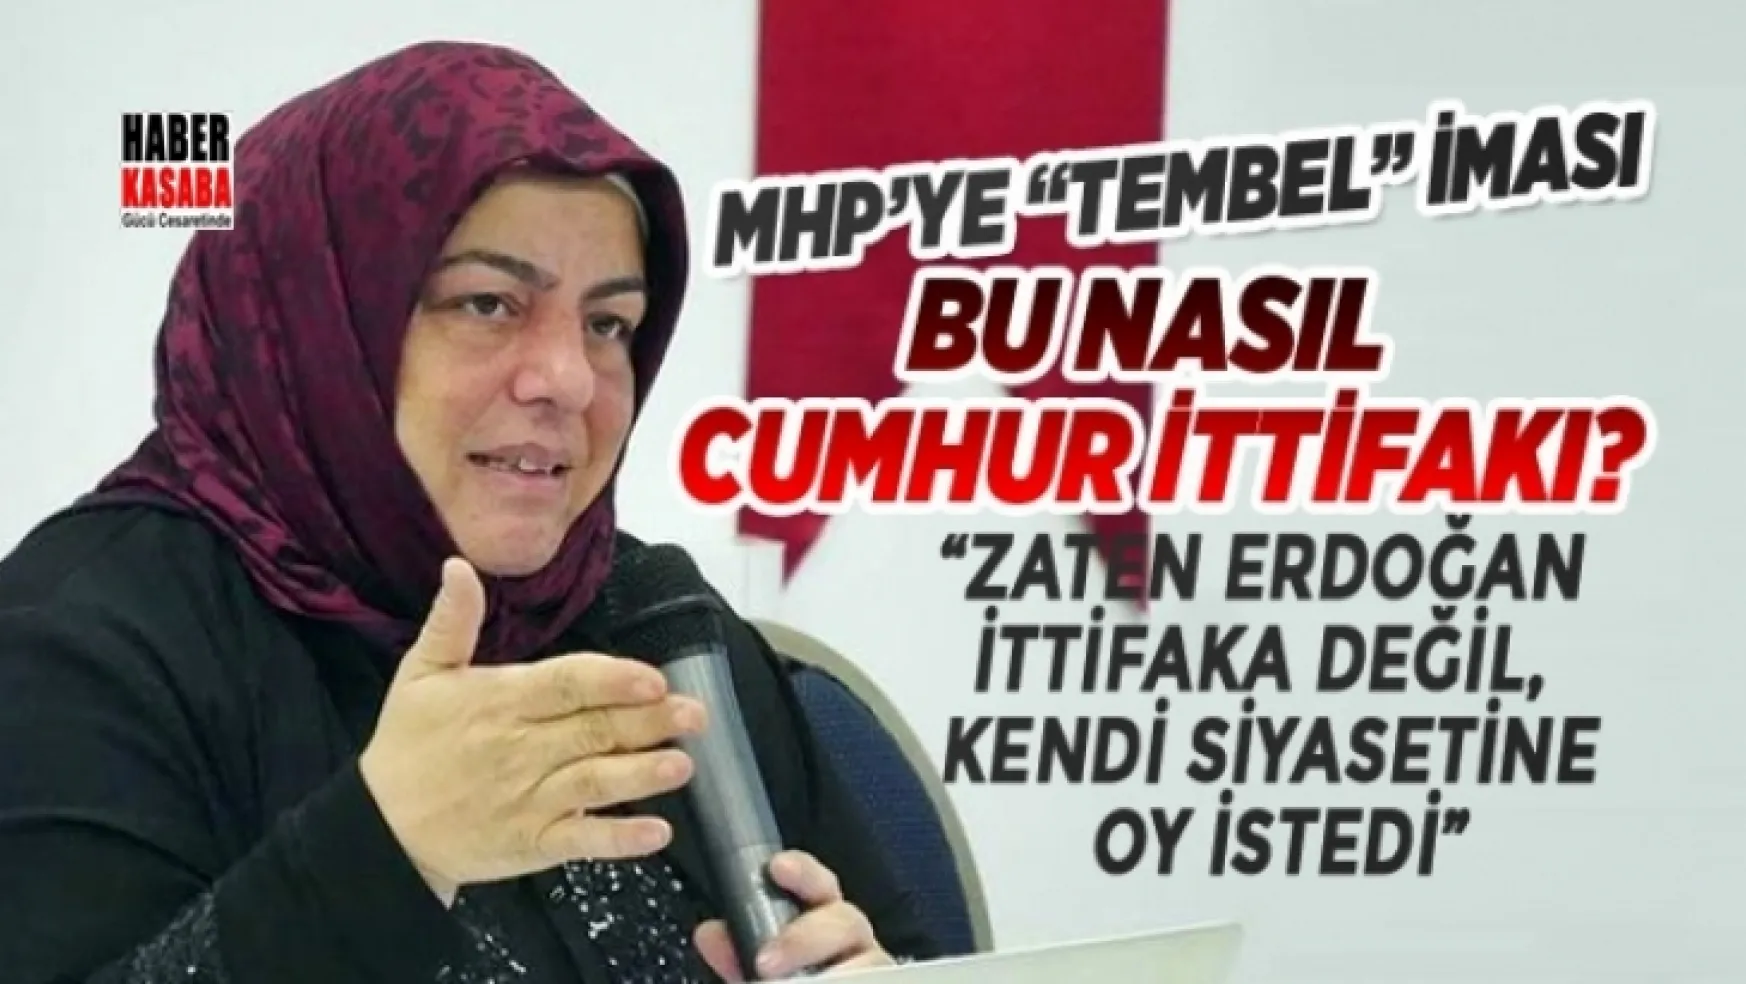 MHP'ye 'tembel' iması! 'Zaten Erdoğan ittifaka değil, kendi siyasetine oy istiyor'